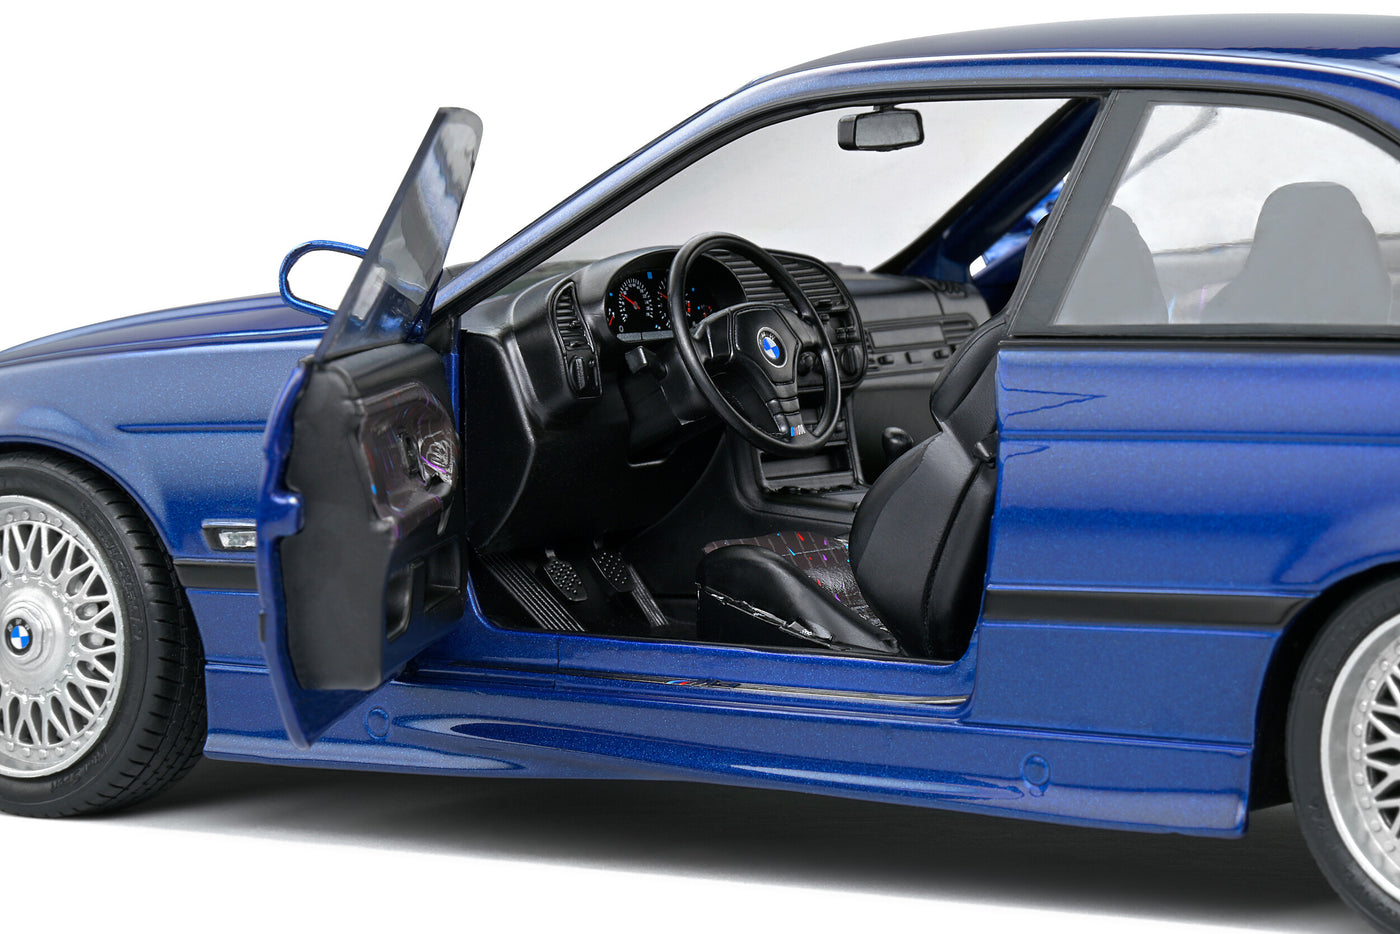 Solido 1994 BMW M3 E36 Coupe 1:18 Diecast Scale Model